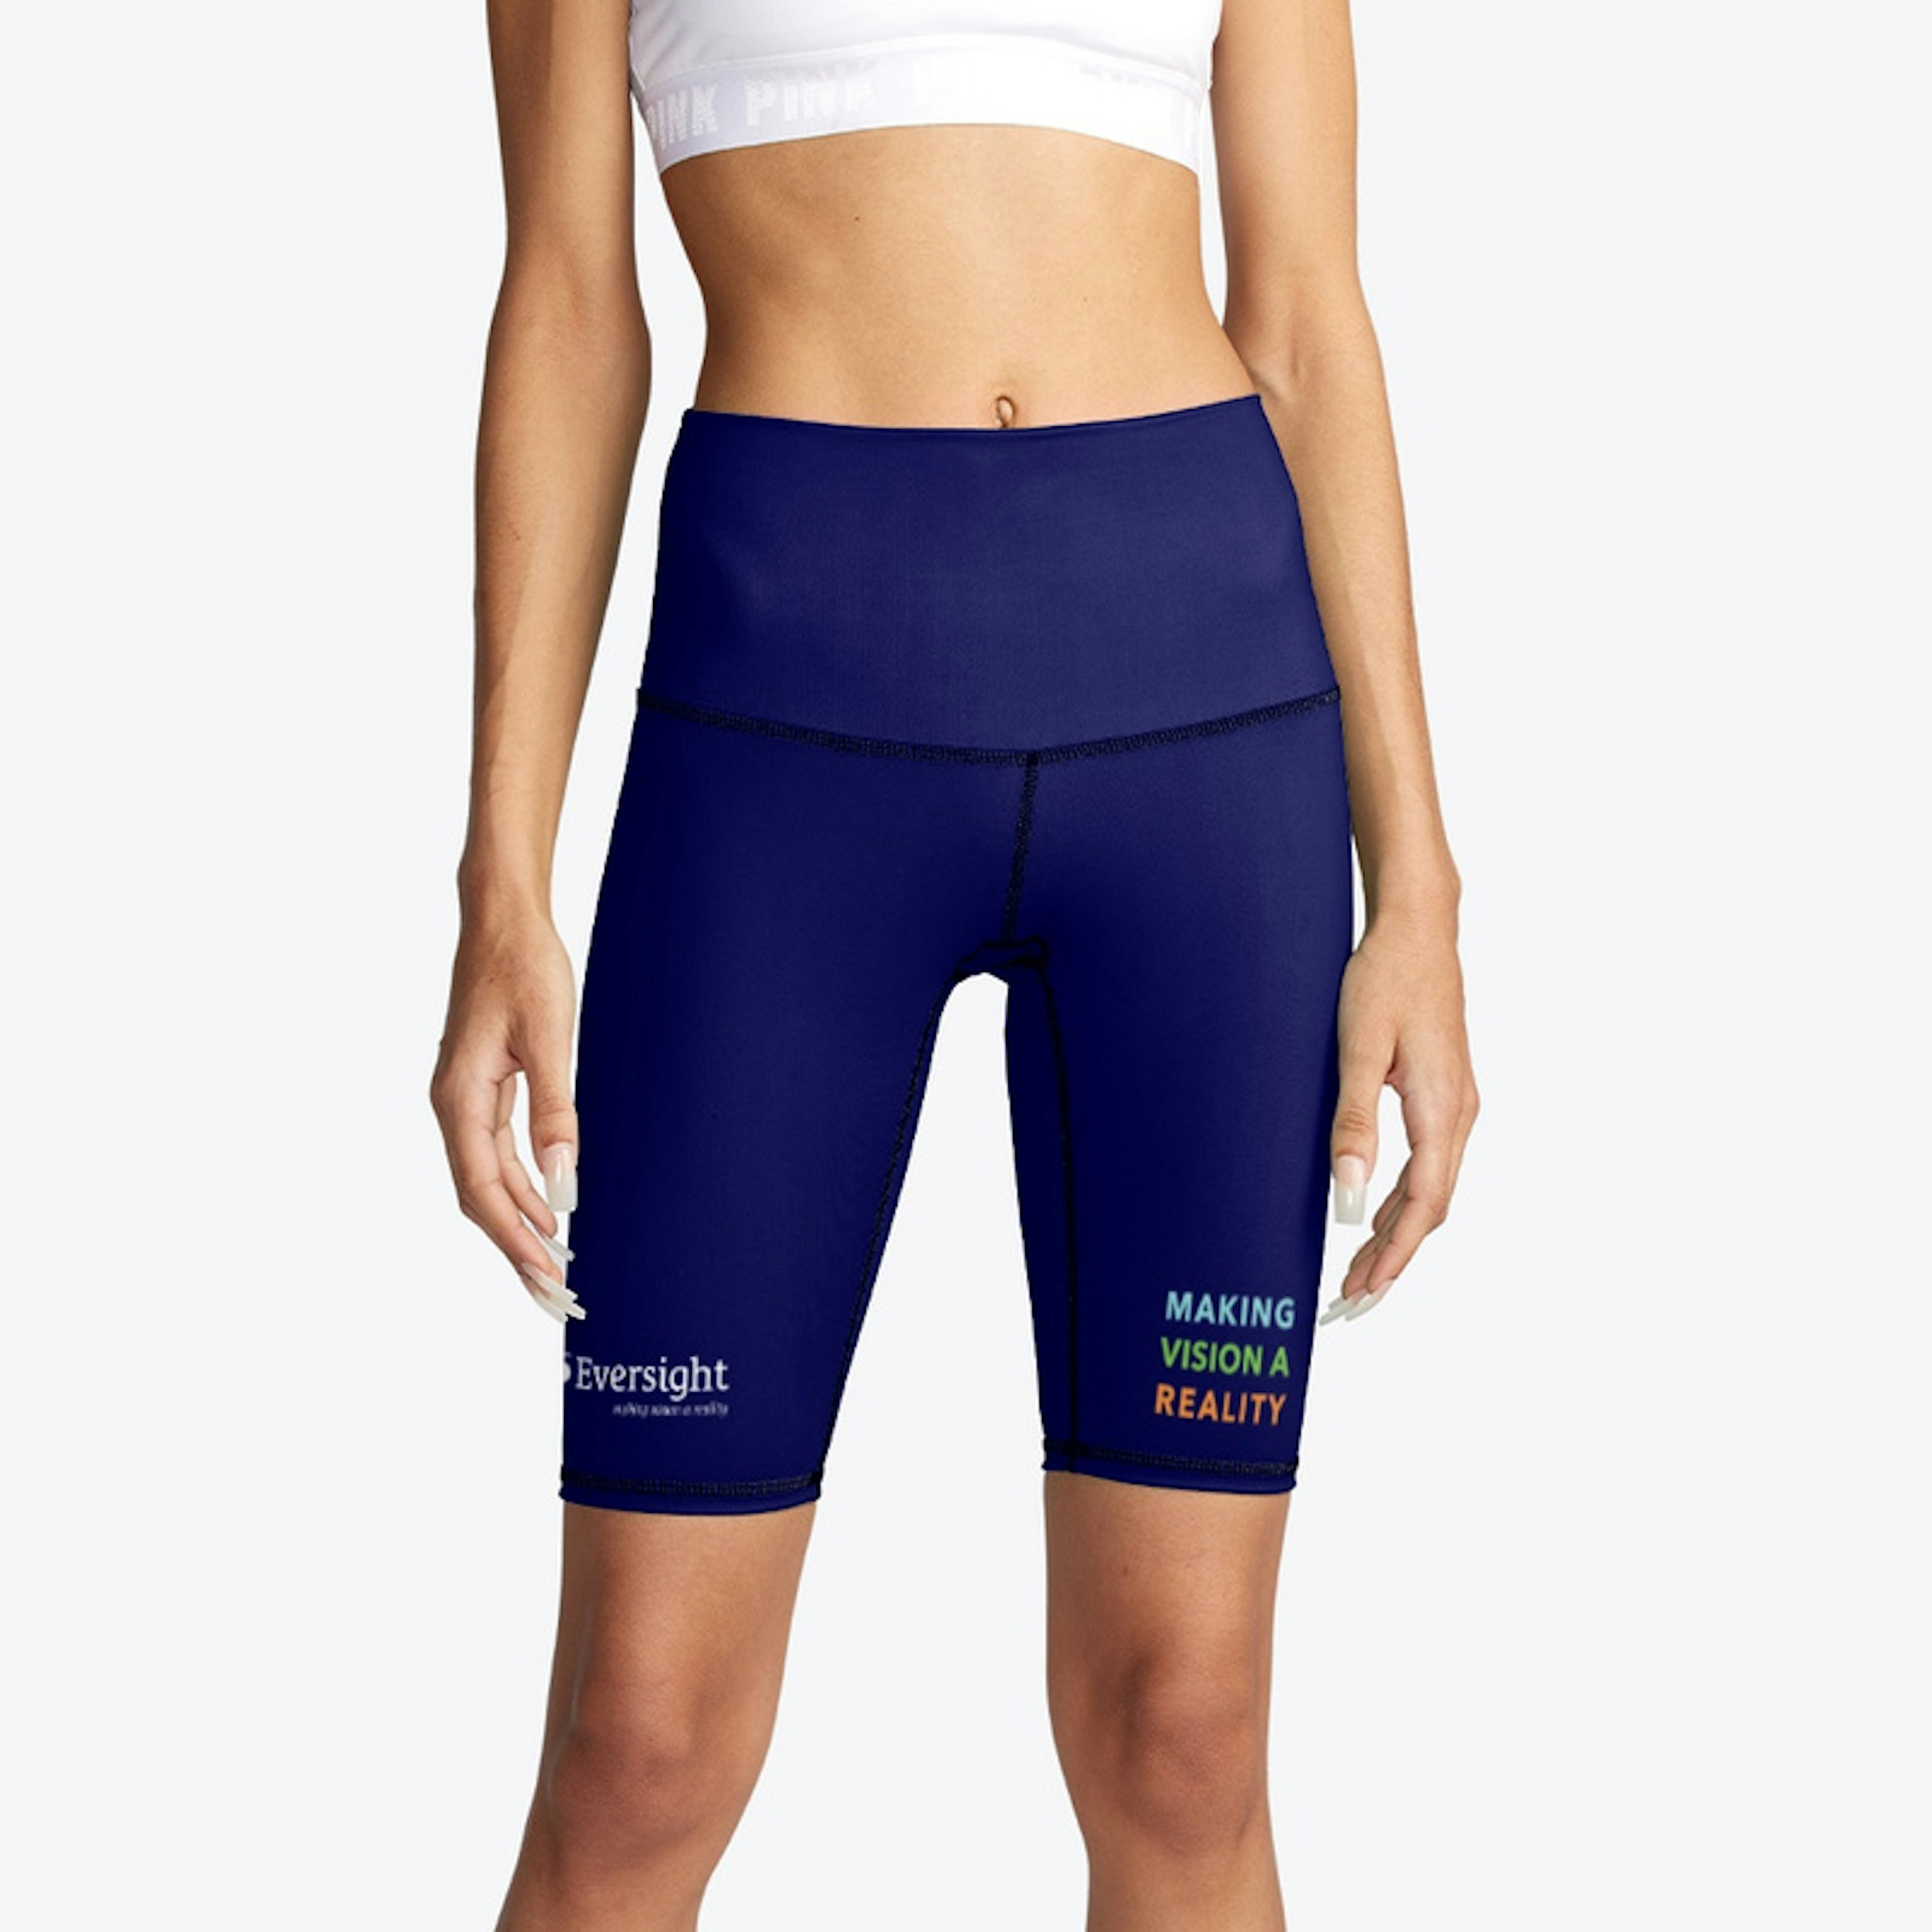 Eversight Women's Bike Shorts - Navy